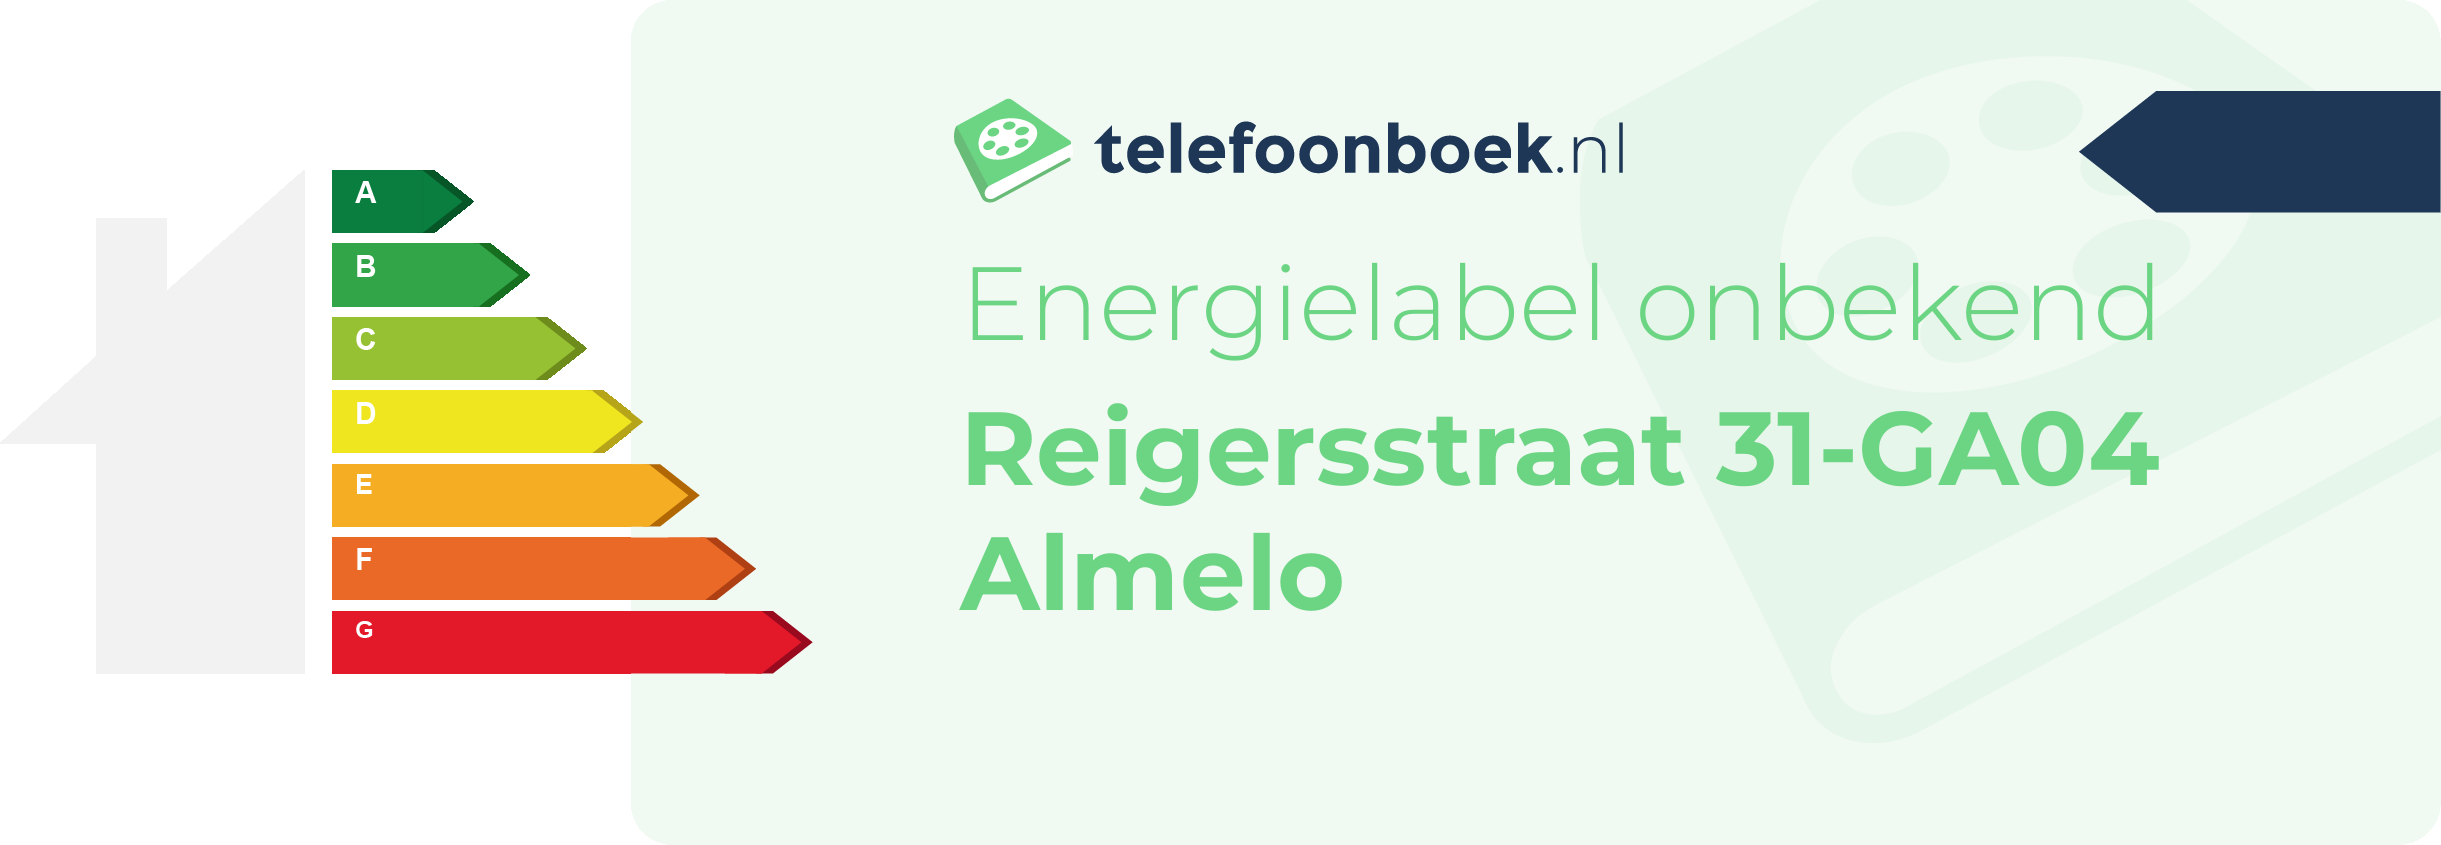 Energielabel Reigersstraat 31-GA04 Almelo